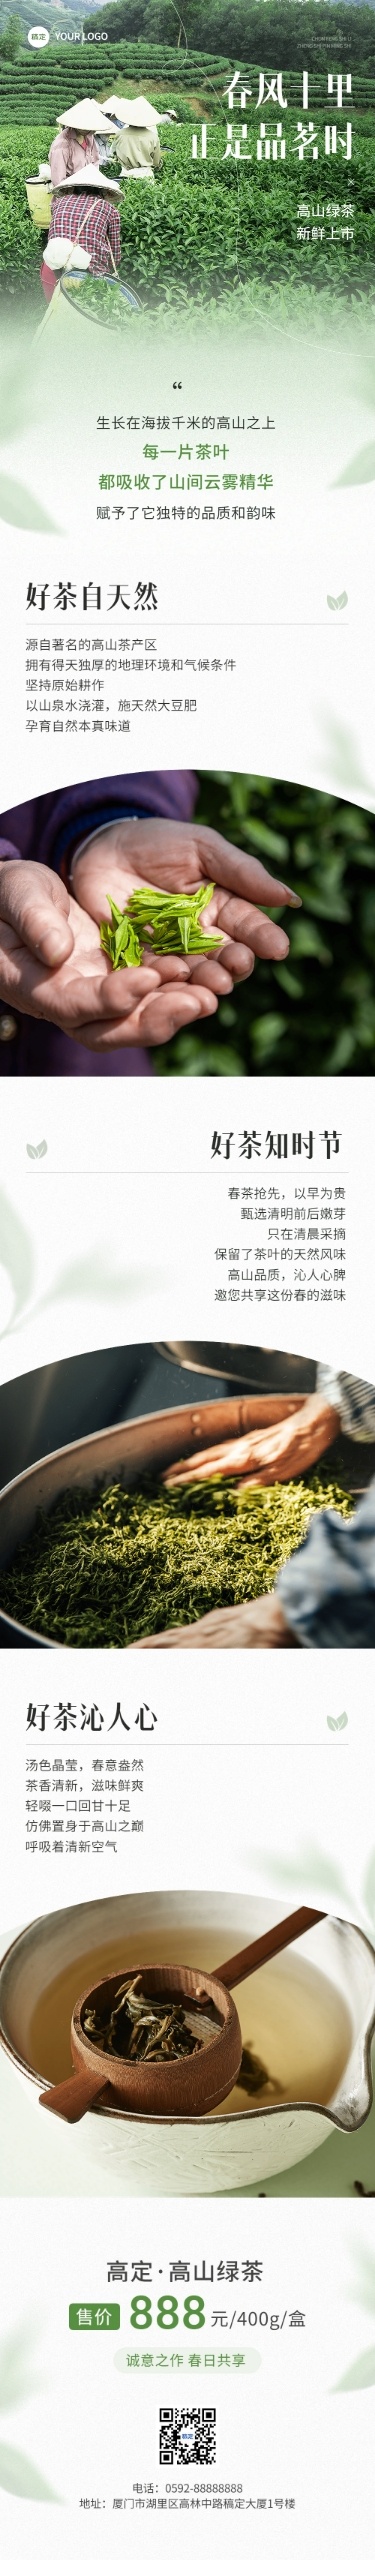 茶叶促销宣传微信公众号文章长图AIGC